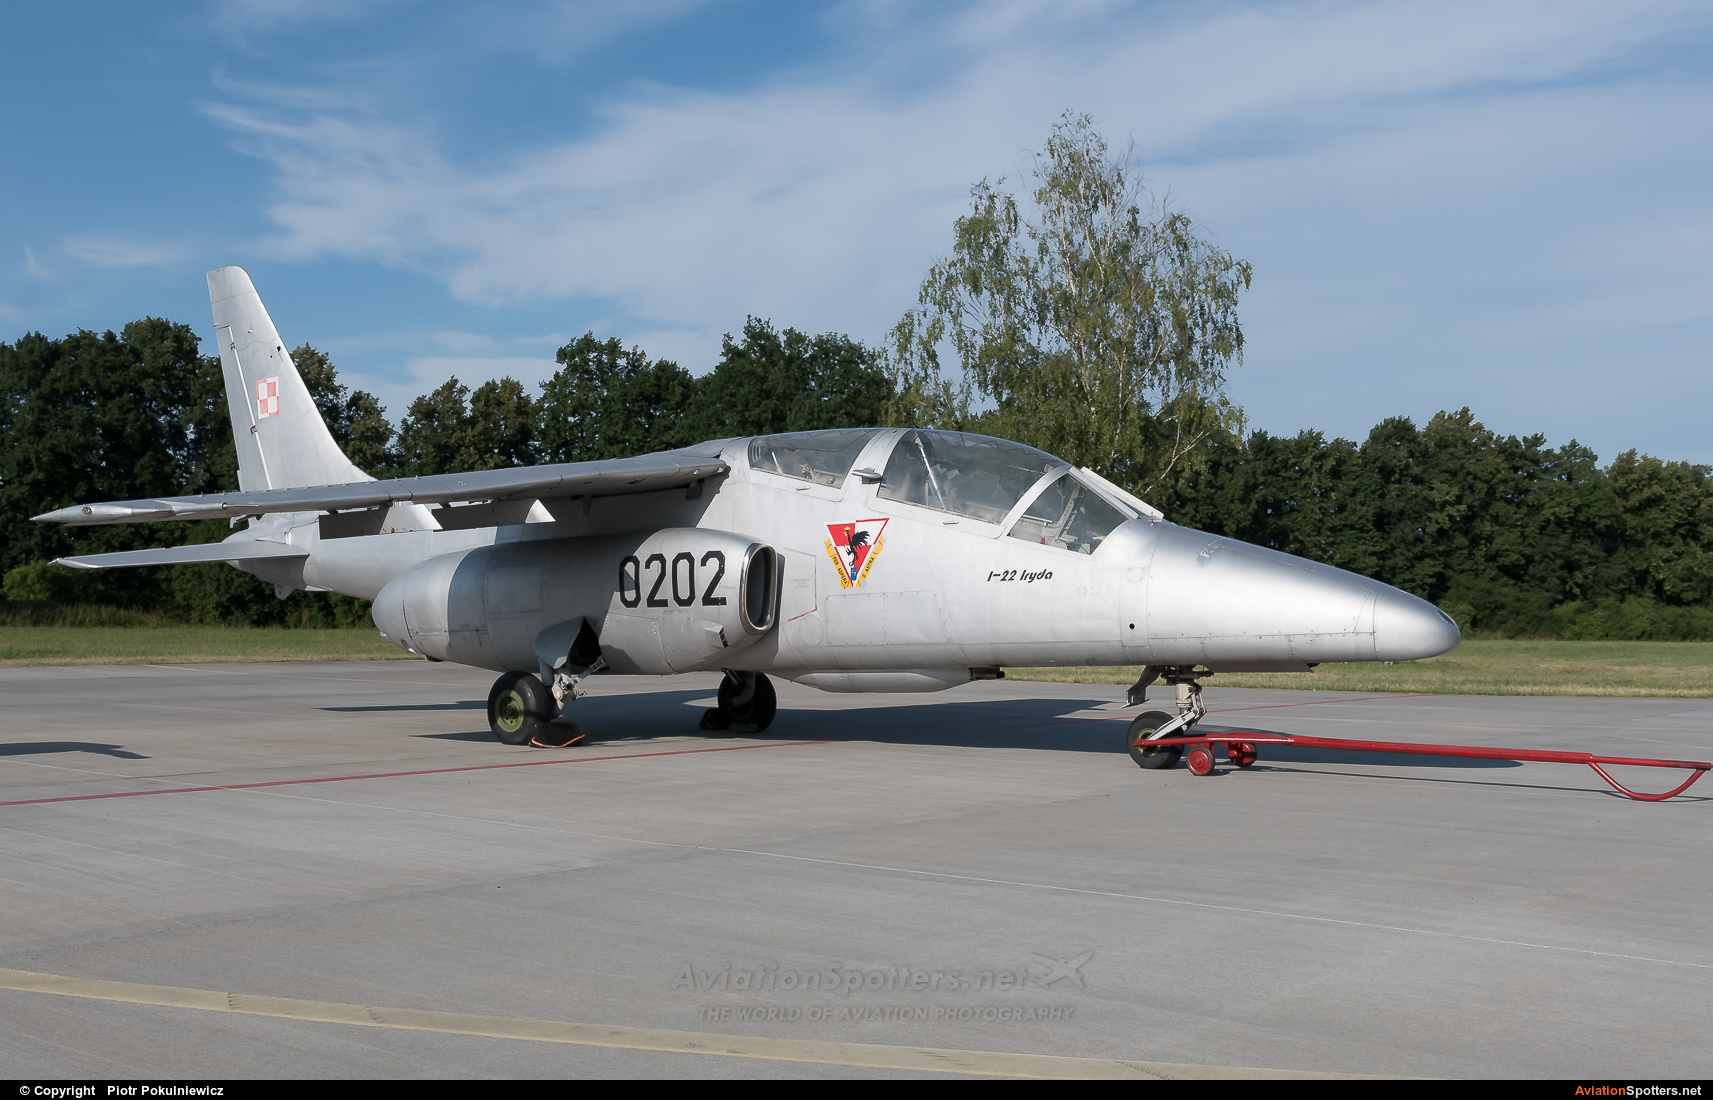 Poland - Air Force  -  I-22 Iryda   (0202) By Piotr Pokulniewicz (Piciu)